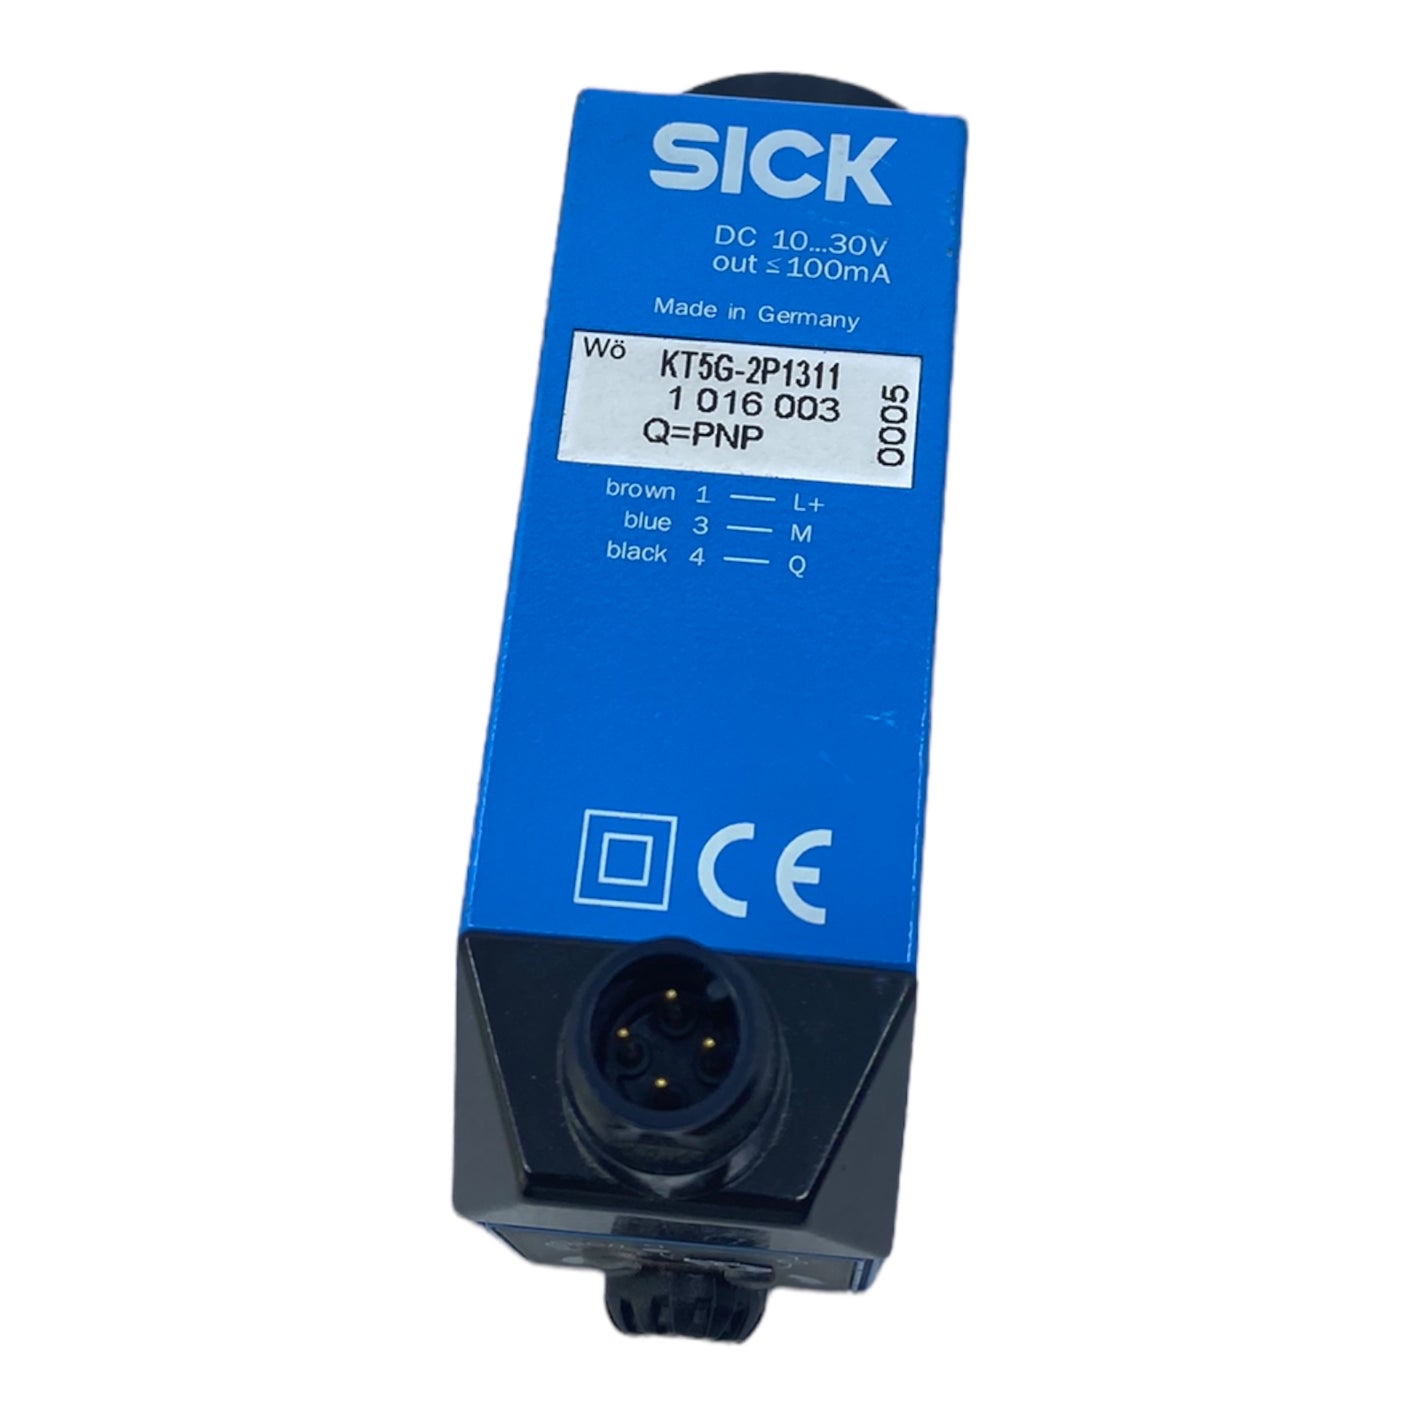 Sick KT5G-2P1311 Kontrastsensor 10…30V DC 100mA 10 kHz IP67 Stecker M12 4-polig